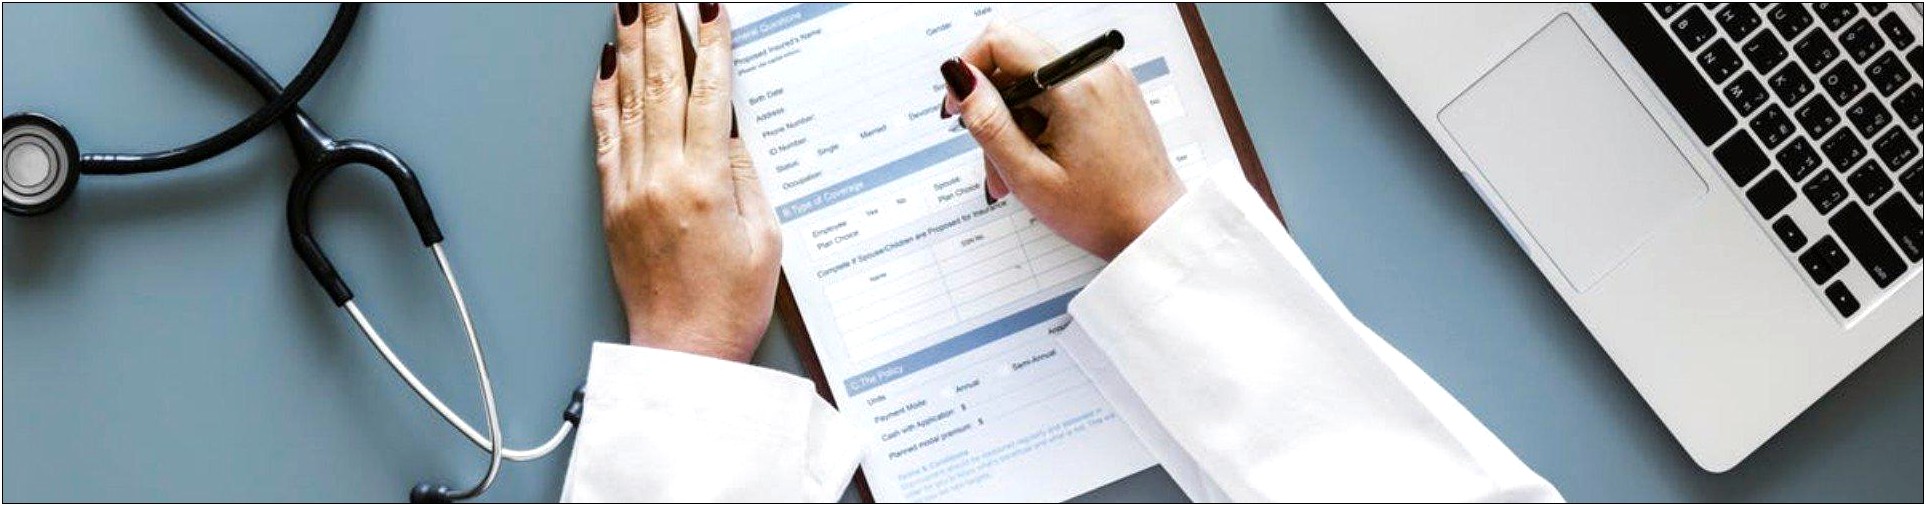 Resume Cover Letter Sample Medical Assistant